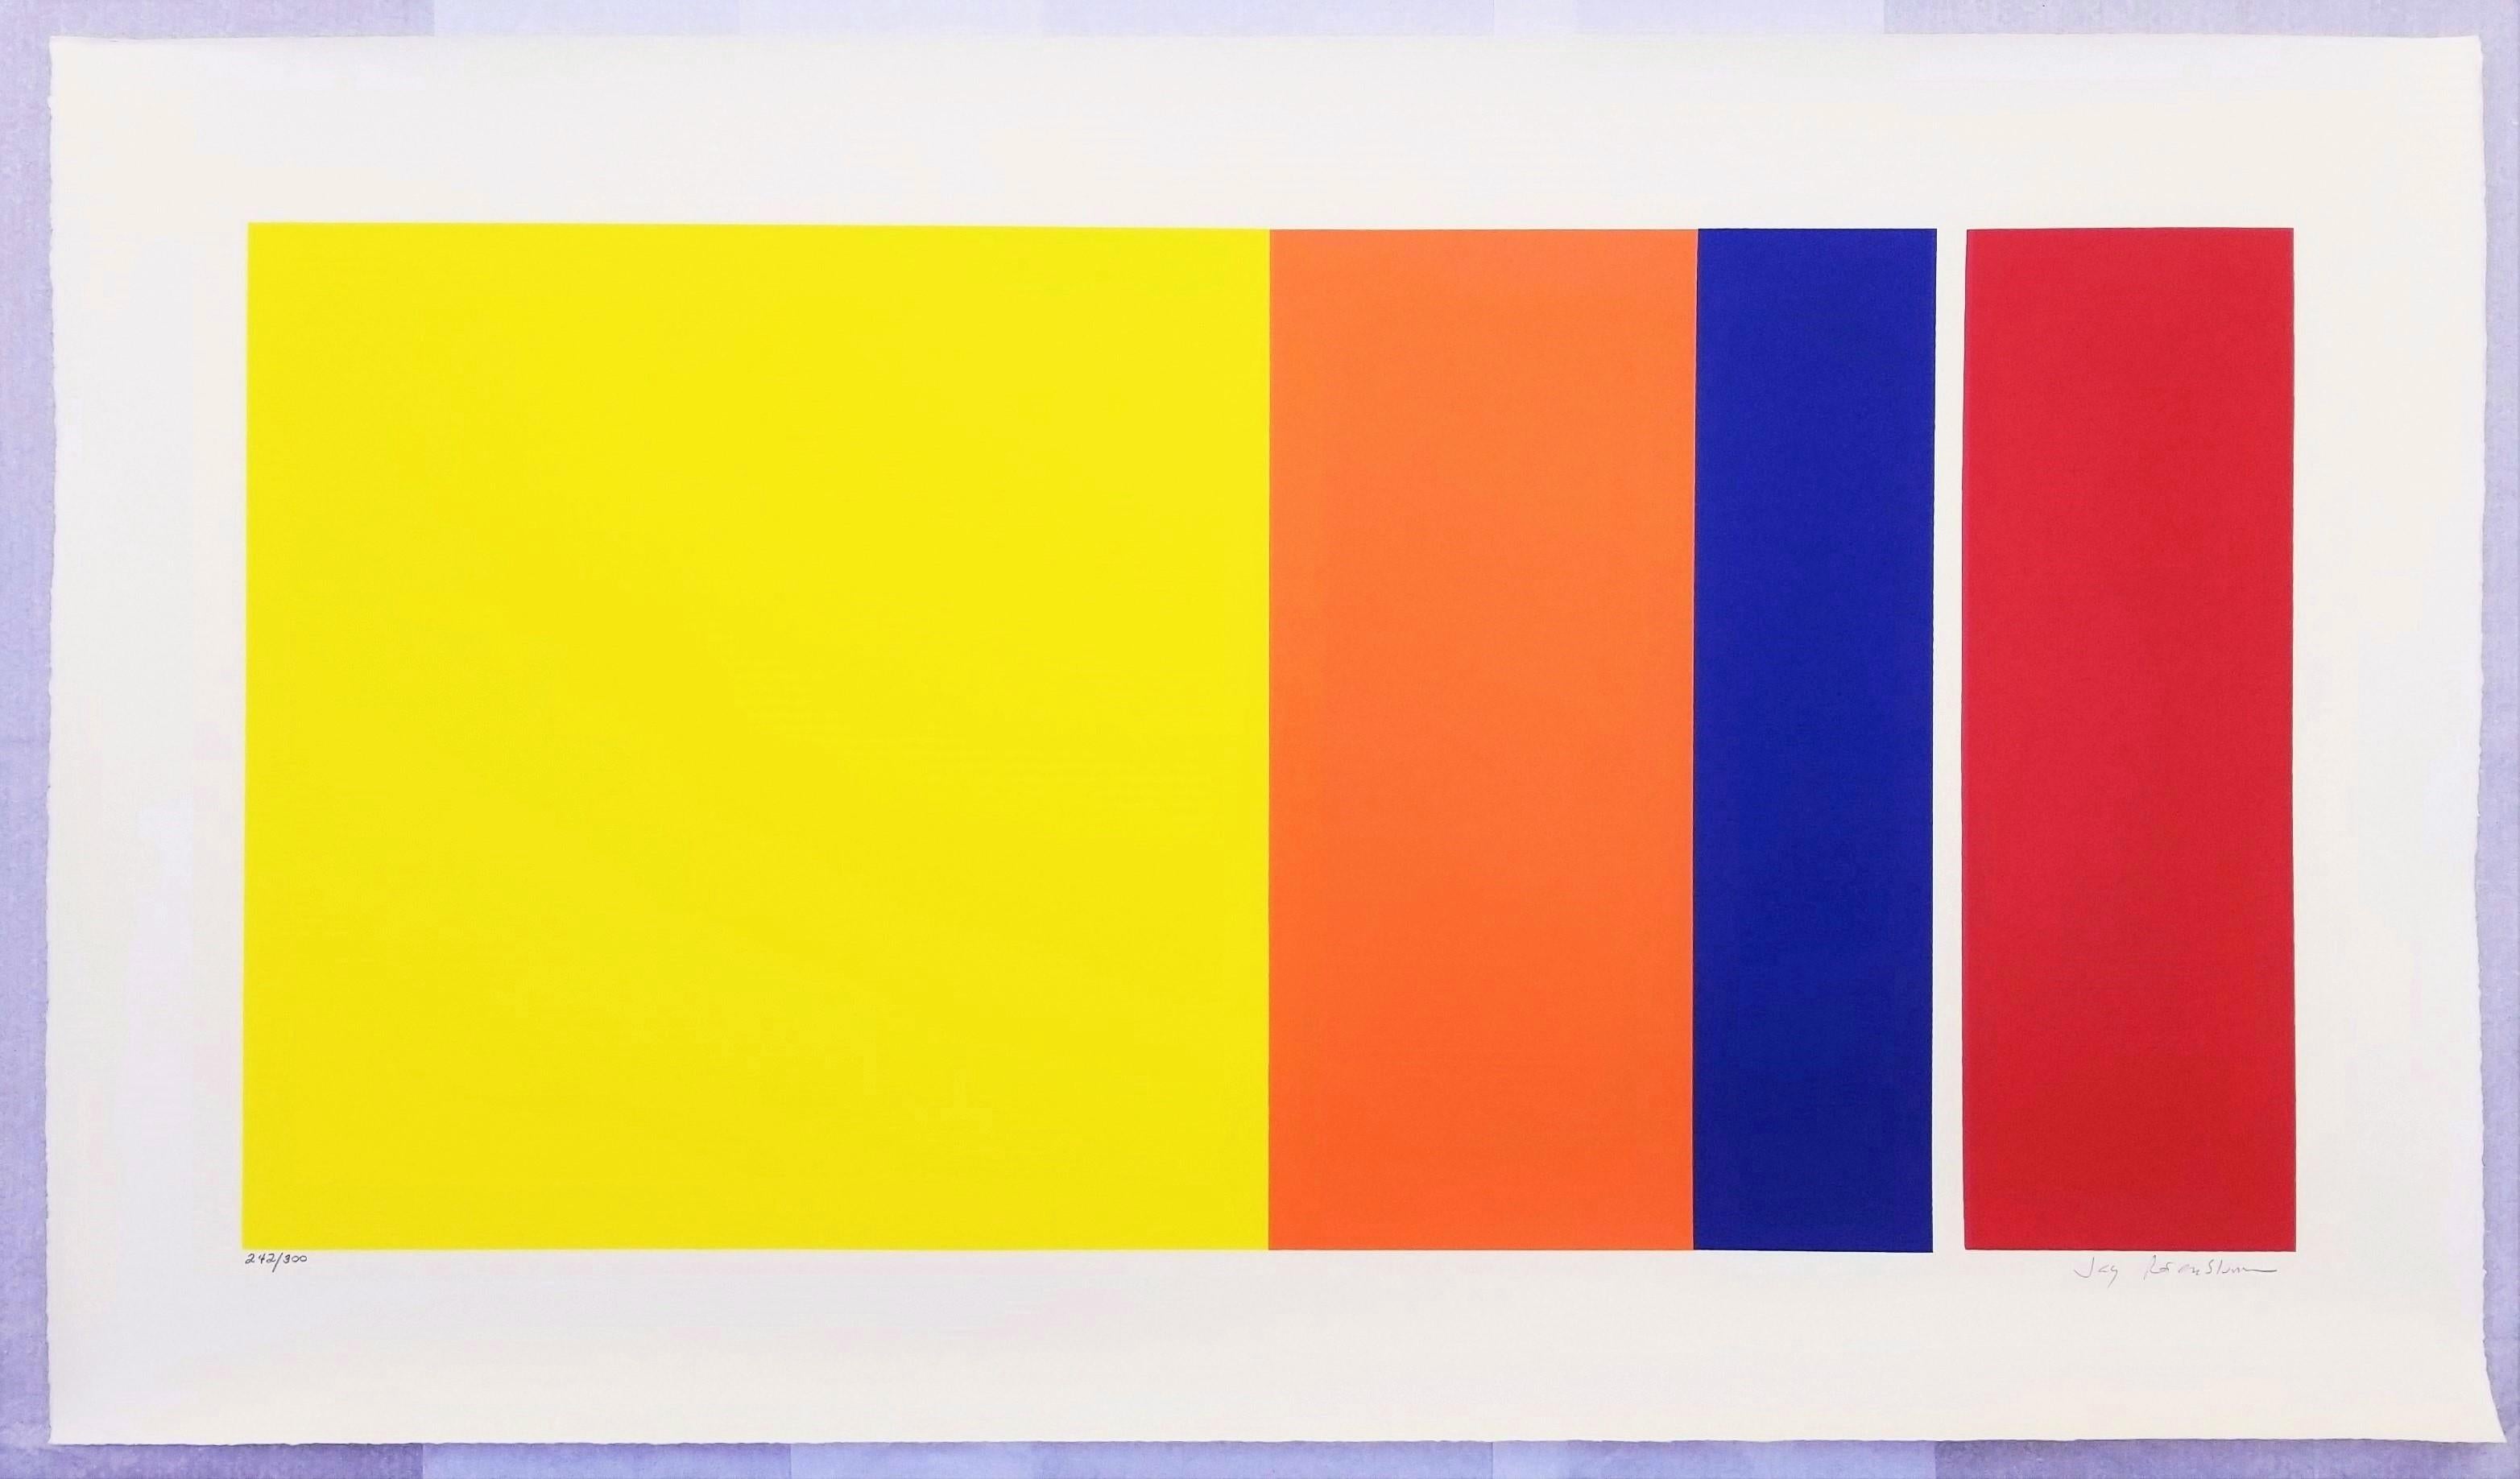 Grove #1 /// Abstrakte geometrische farbenfrohe Jay Rosenbulm New Yorker Siebdruckkunst, Jay Rosenbulm (Geometrische Abstraktion), Print, von Jay Rosenblum